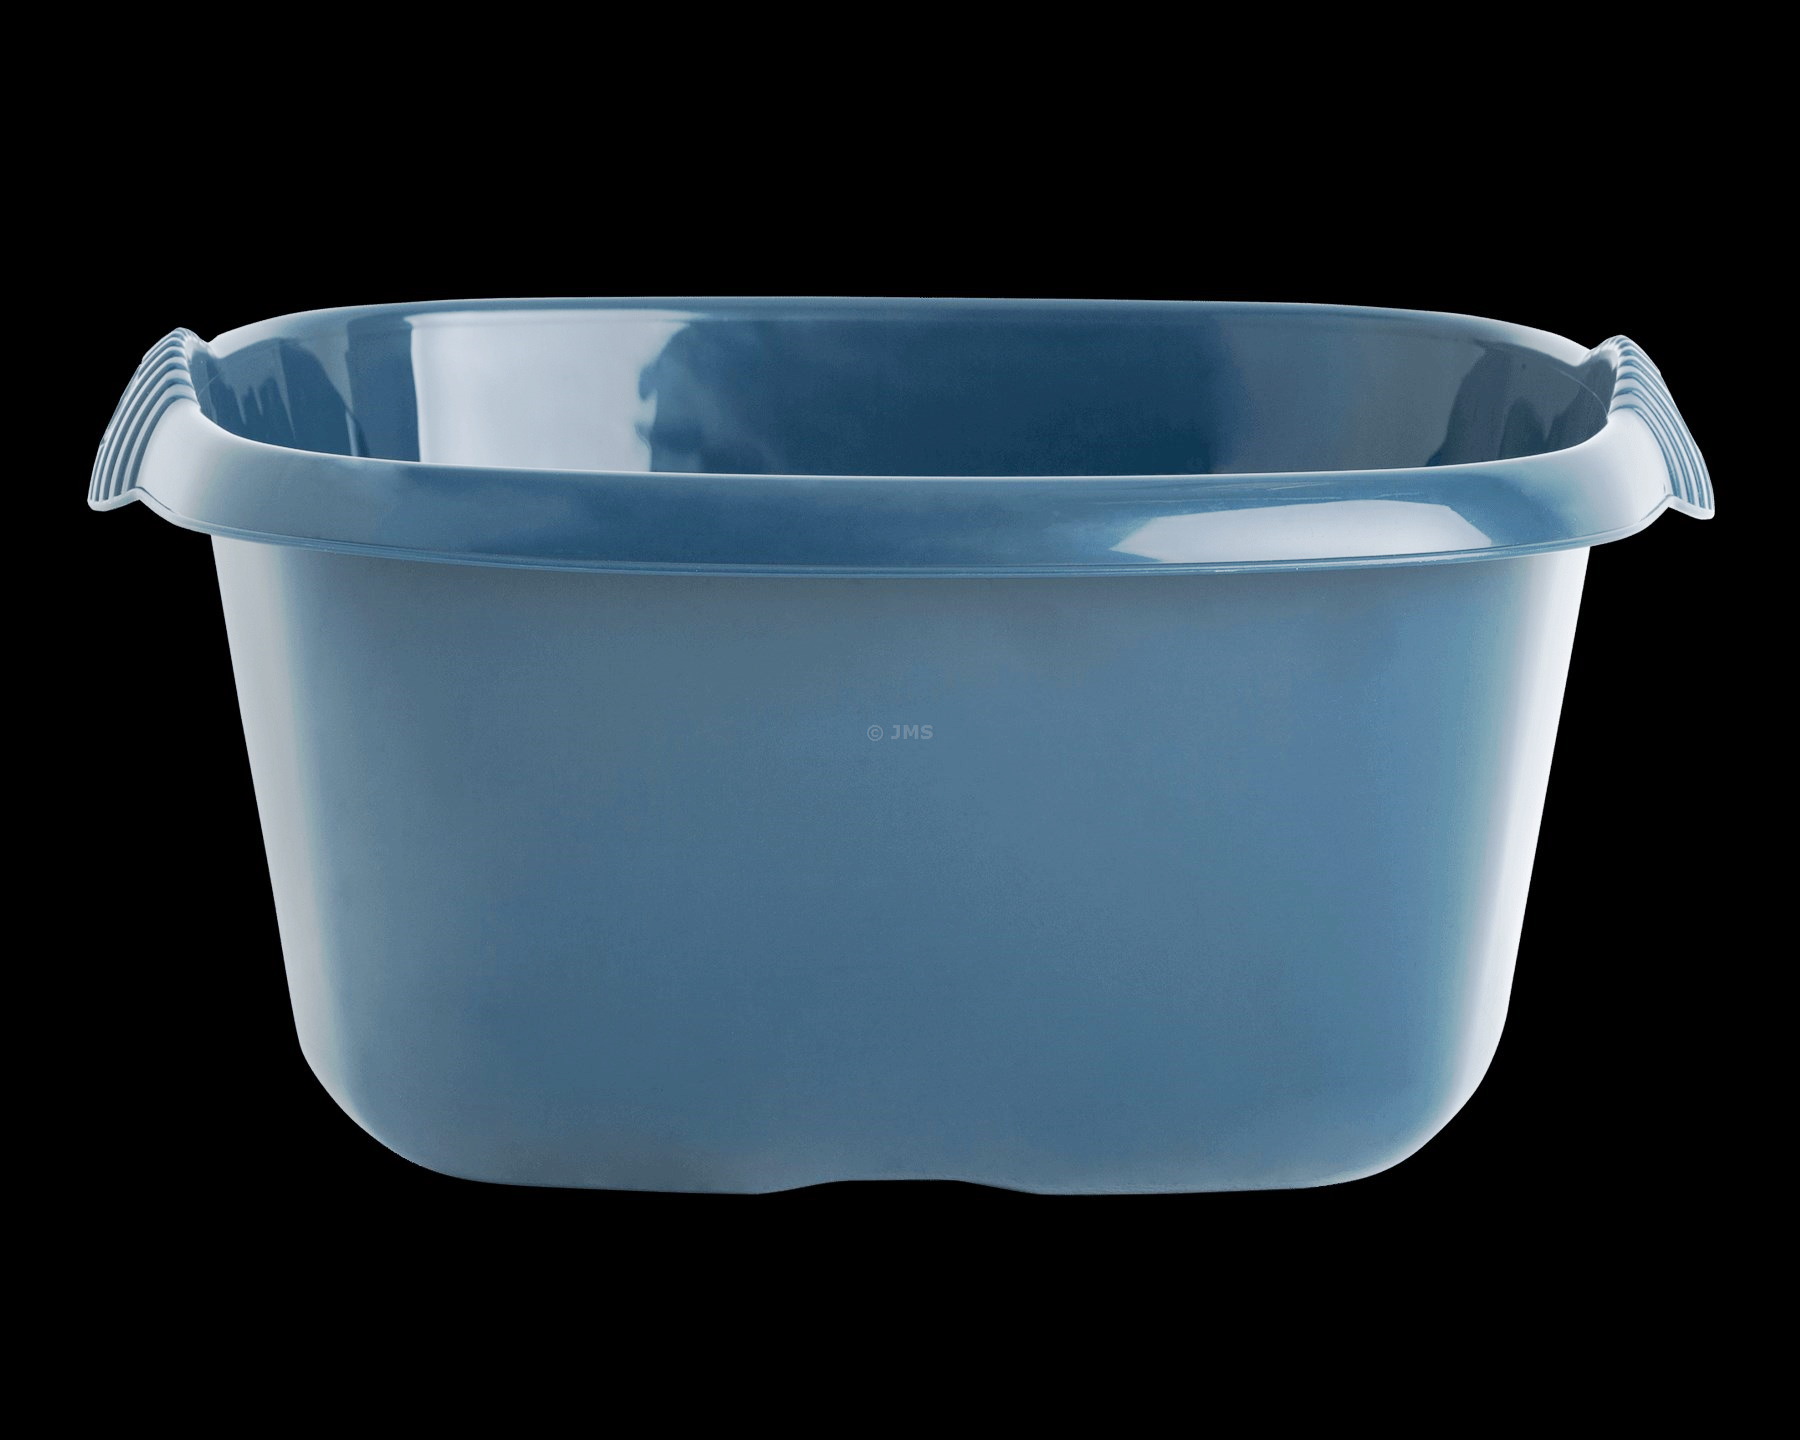 Casa 32cm Washing Up Square Bowl 9L Capacity Integral Handles Home Kitchen Sink Basin Wash Tub